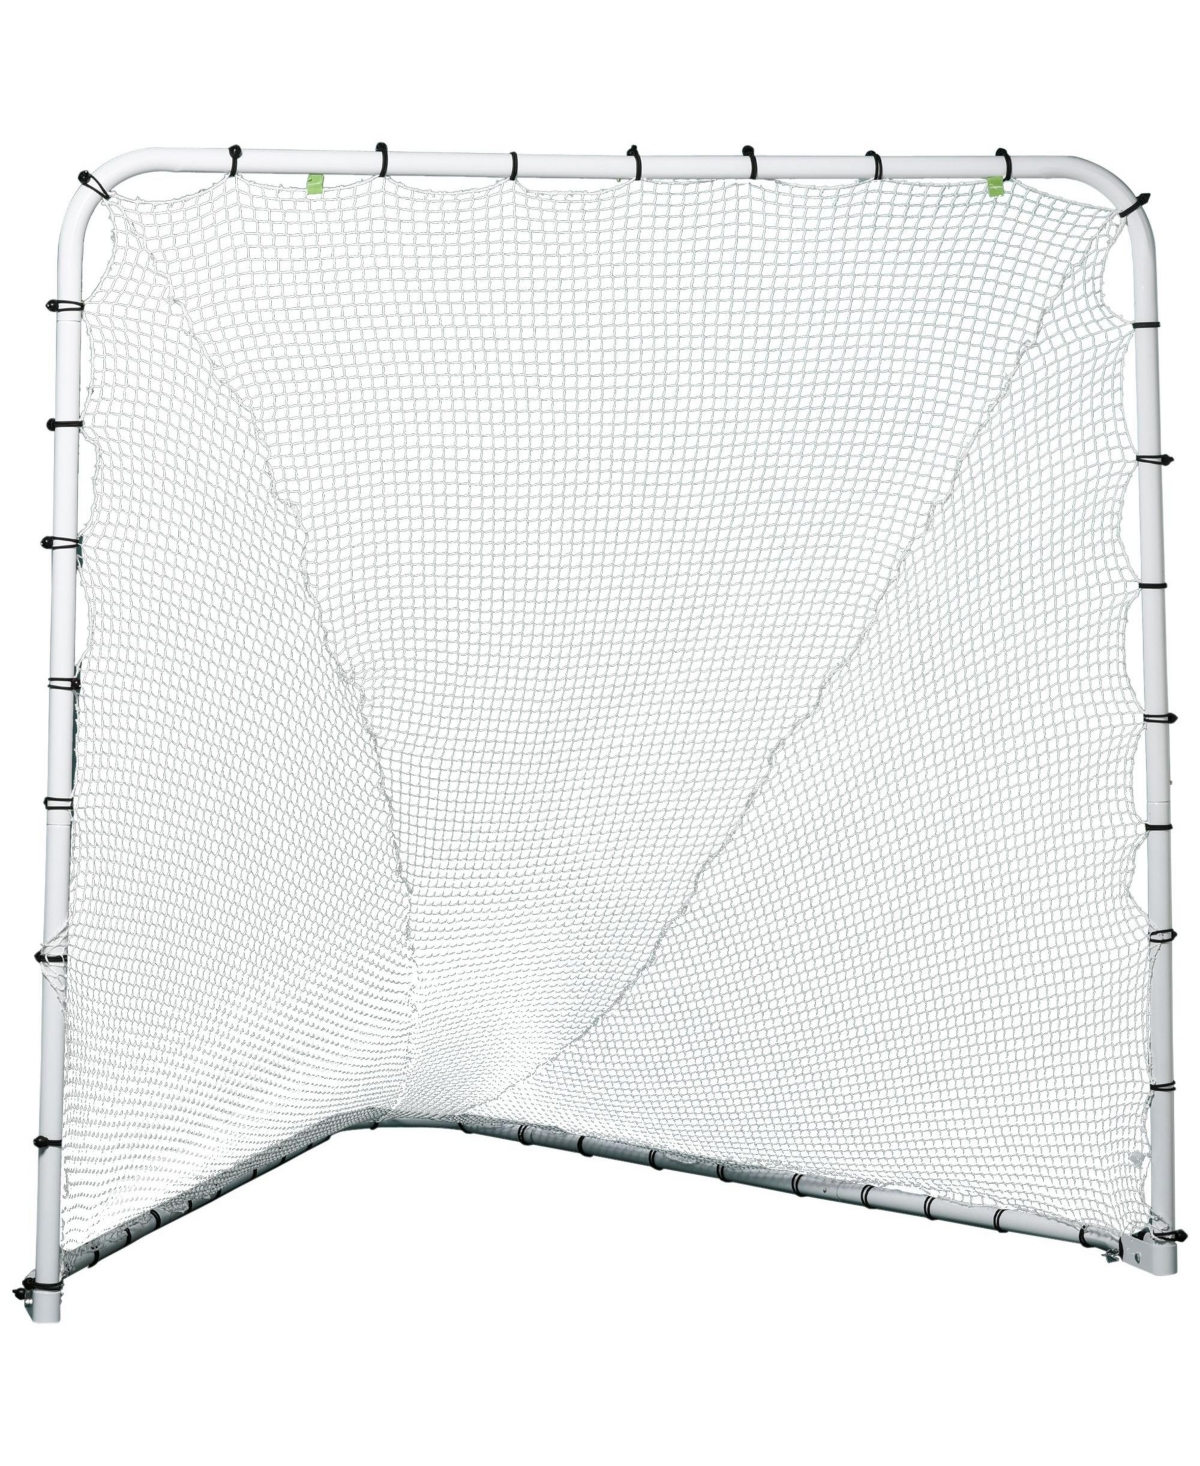 Lacrosse Net w/ Steel Frame, Backyard Folding Lacrosse Goal, 6'x6' - White